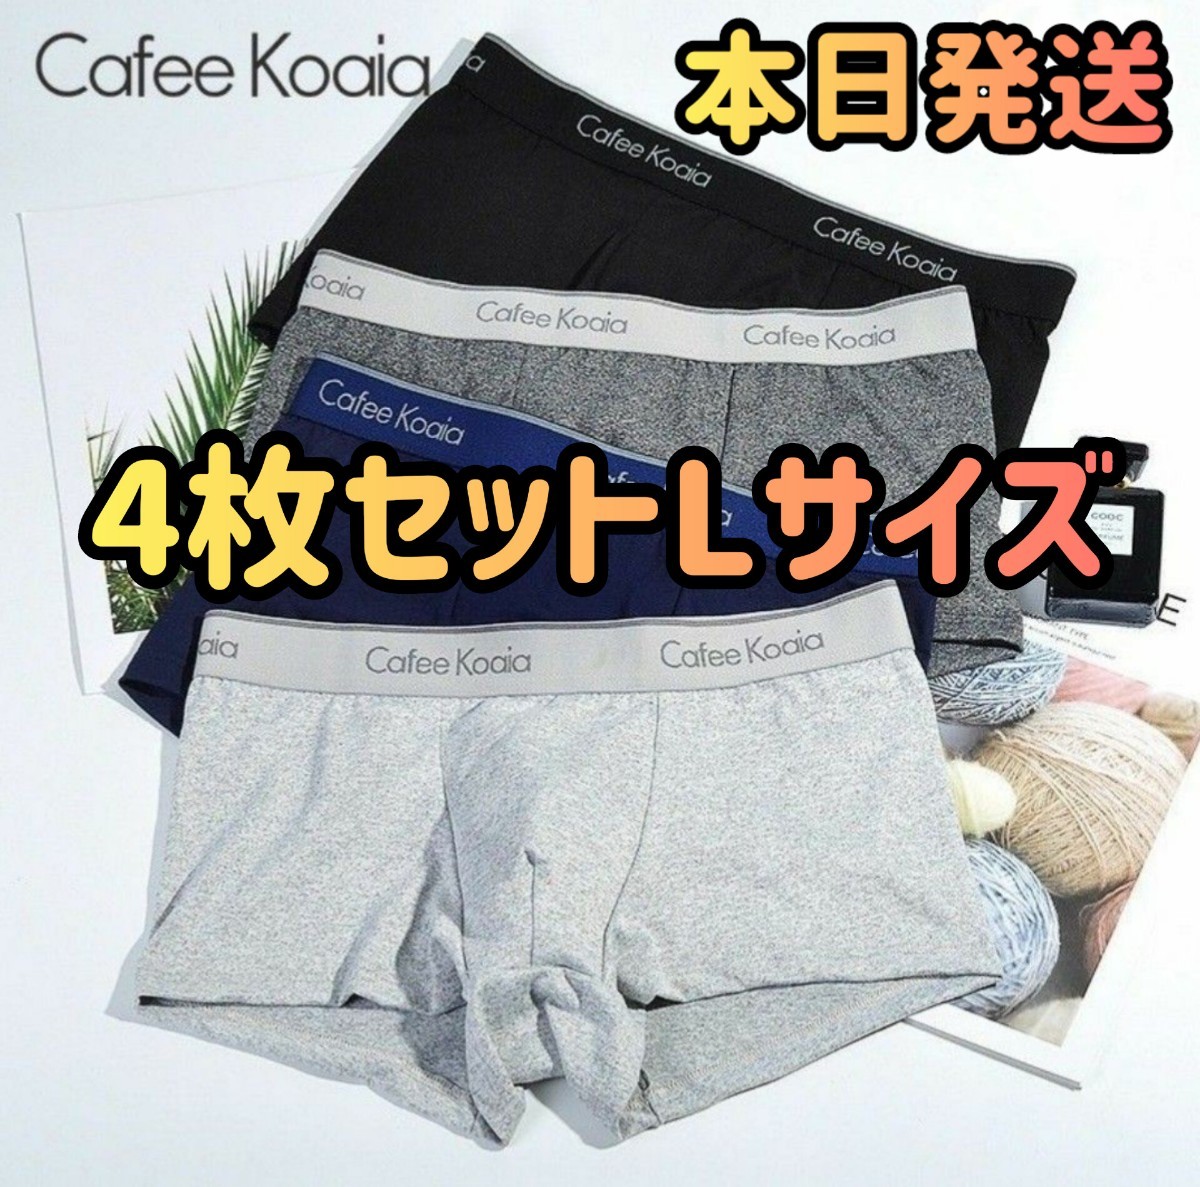 【新品未使用】メンズパンツ 4枚セット ボクサーパンツ 下着 XLサイズ(日本サイズのLサイズ)ファッション パンツ 下着まとめ売り _画像1